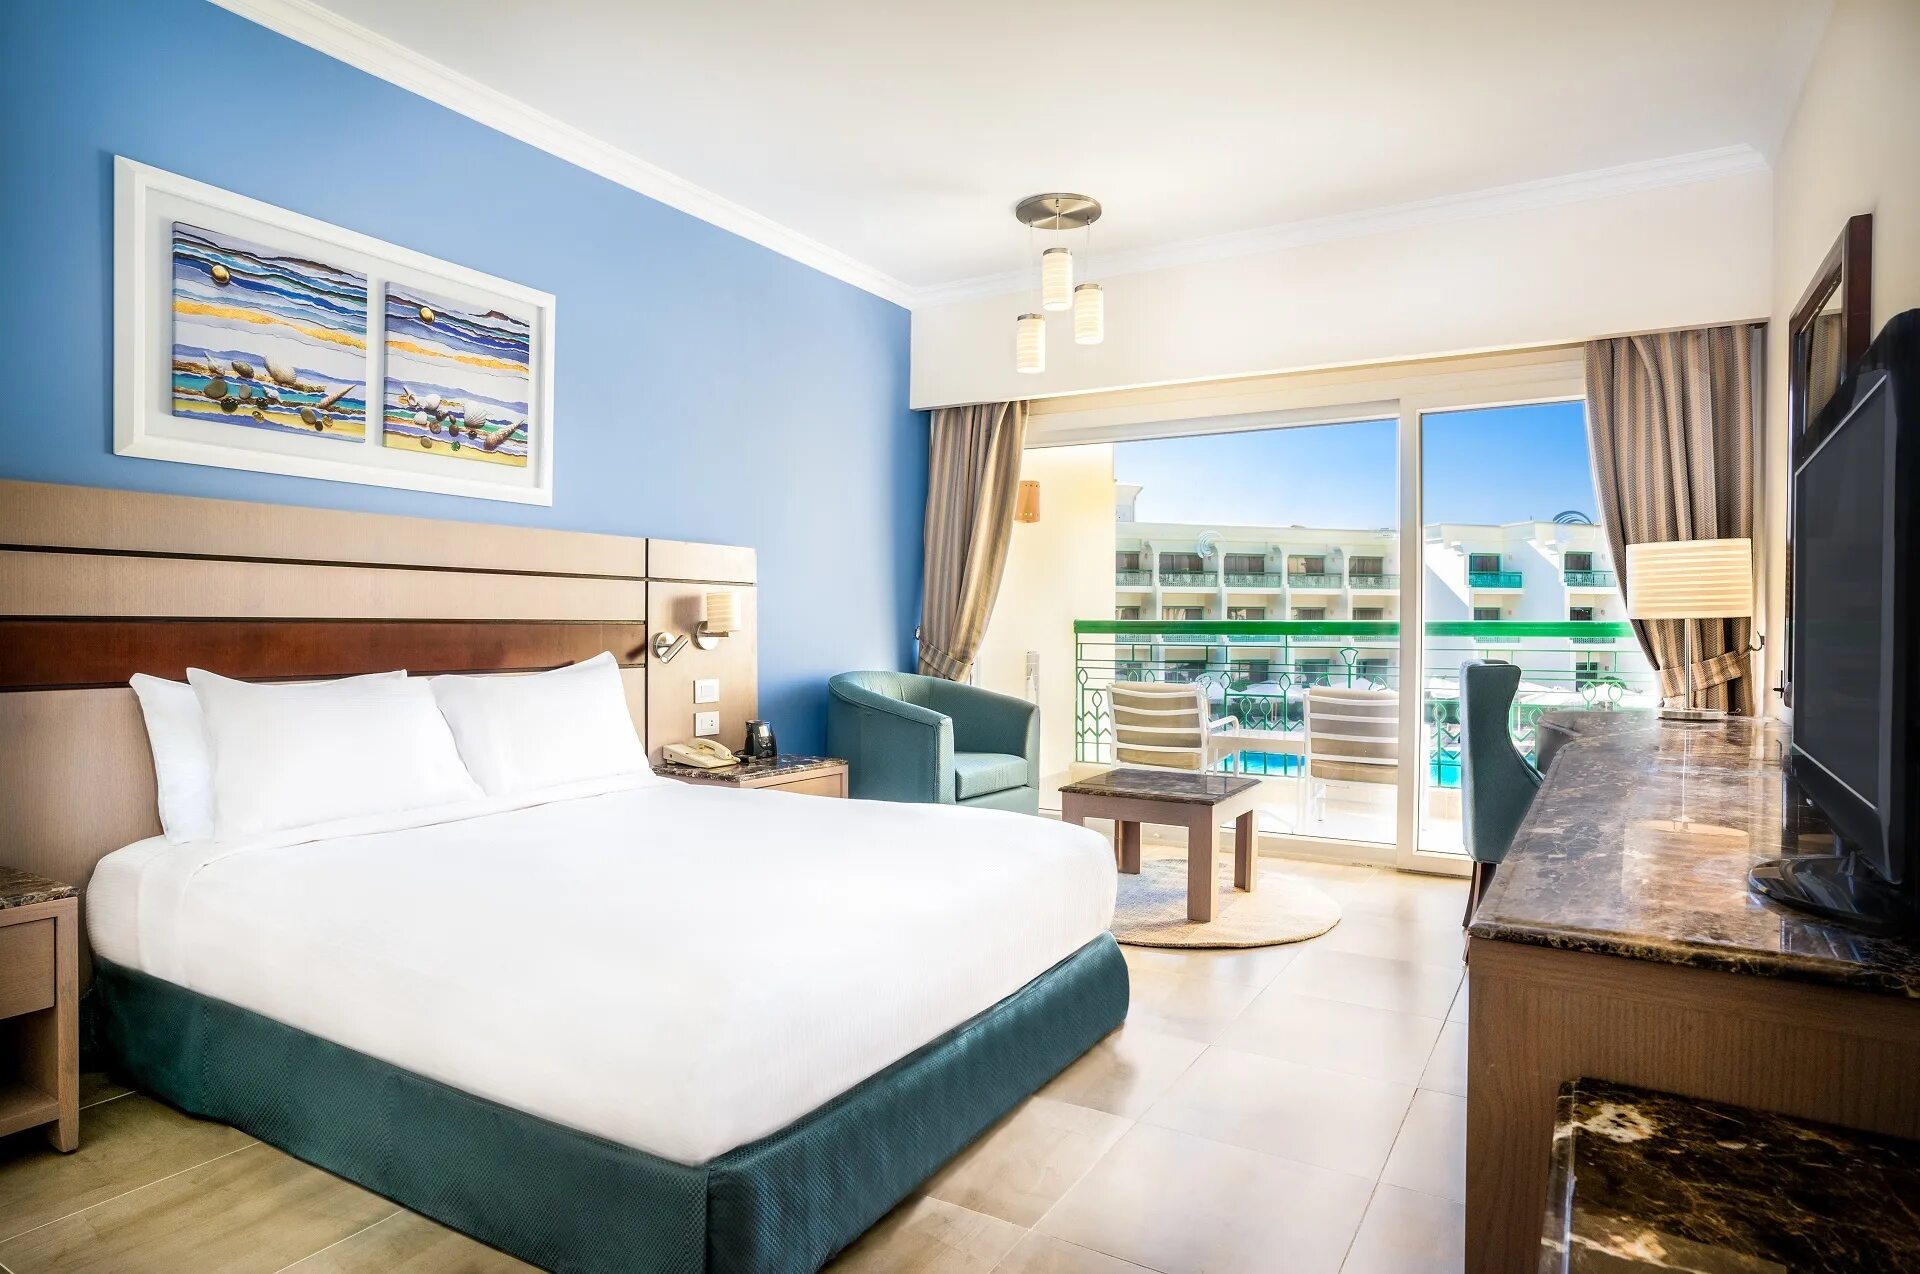 Хургада hurghada swiss inn hurghada. Swiss Inn Resort Hurghada. Swiss Inn Hurghada 5.